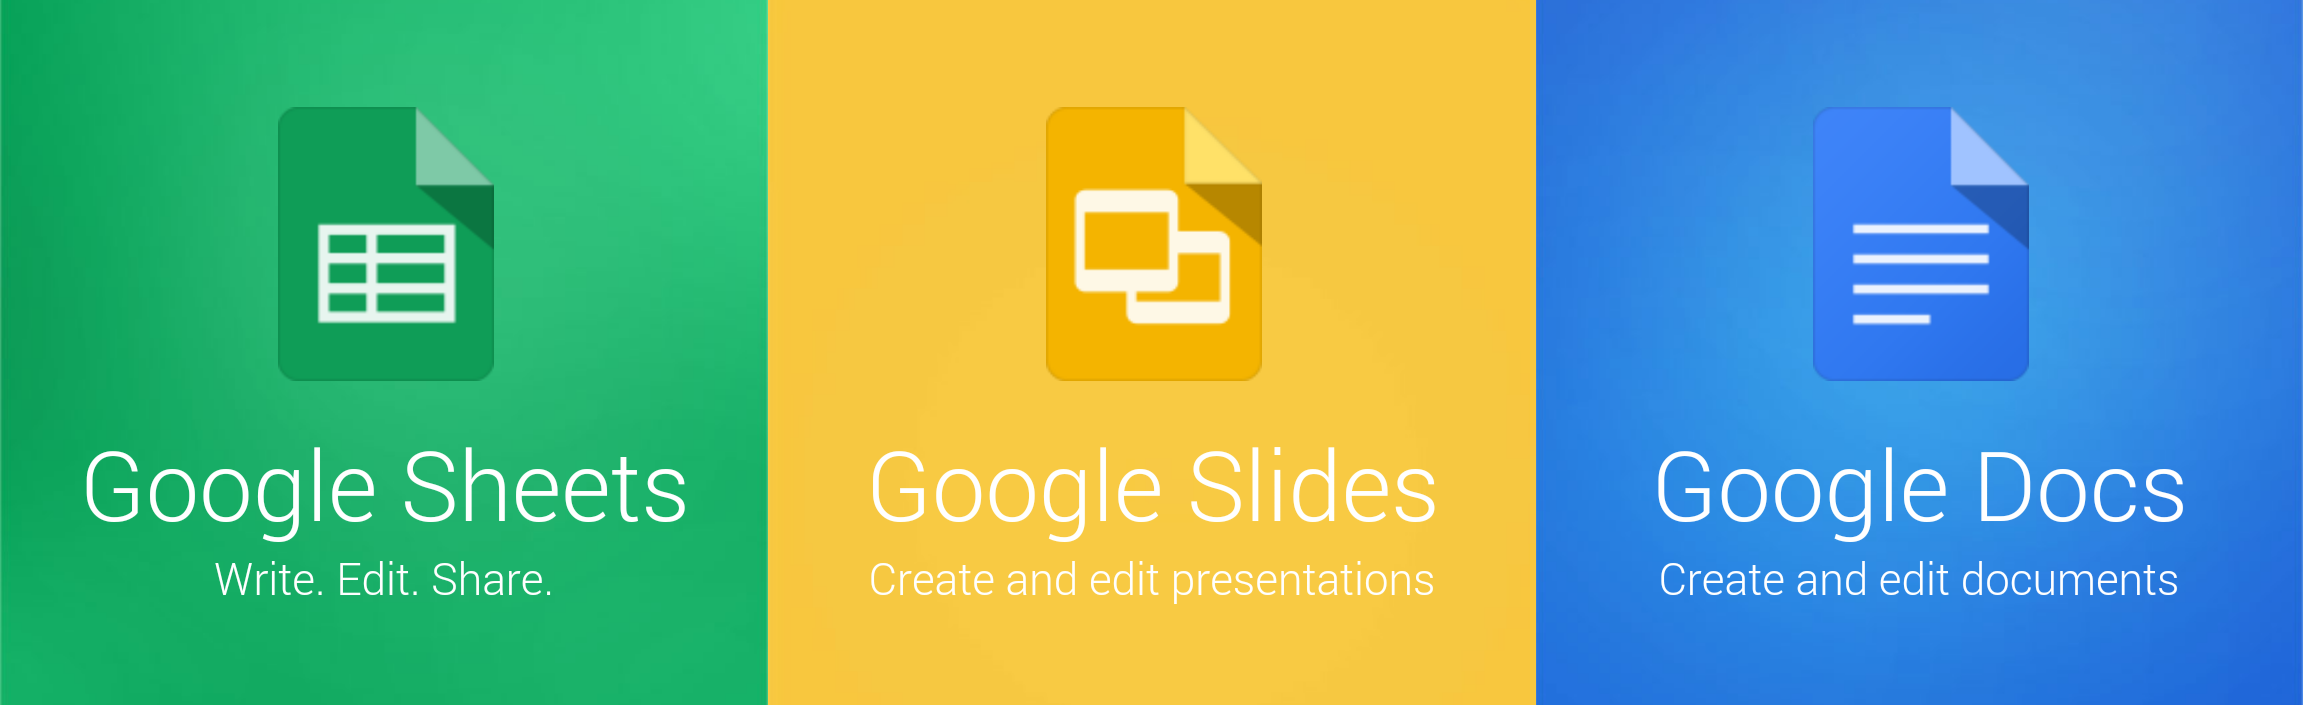 Google sheets png. Google Sheets. Google docs Sheets and Slides. Google Sheets значок.